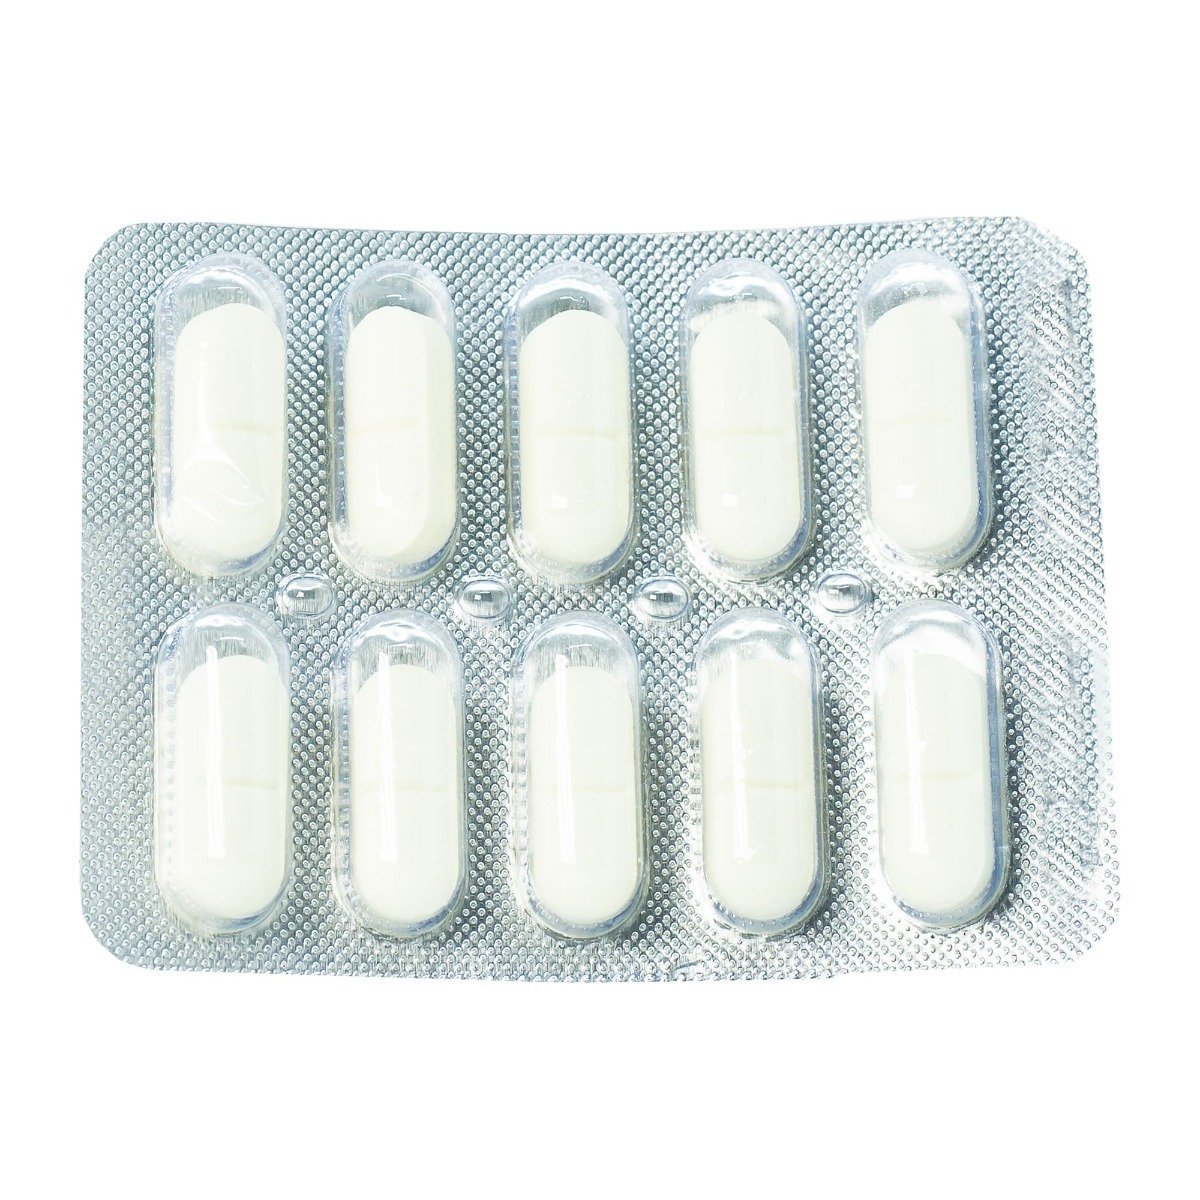 Mono Mak Depo 100 mg - 10 Tablets - Bloom Pharmacy